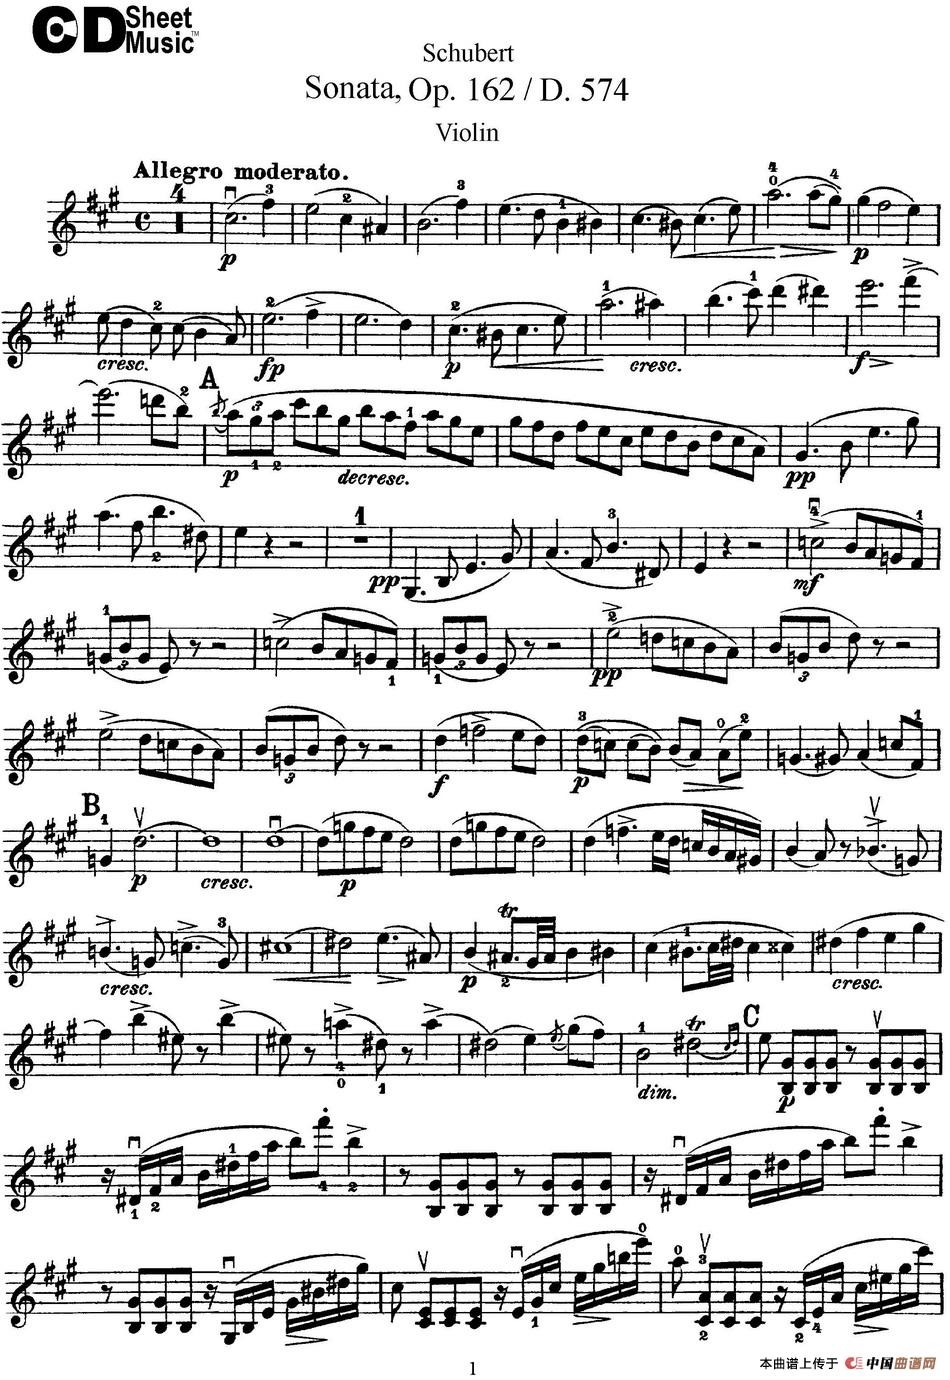 Violin Sonata in A major Op.162 D.574